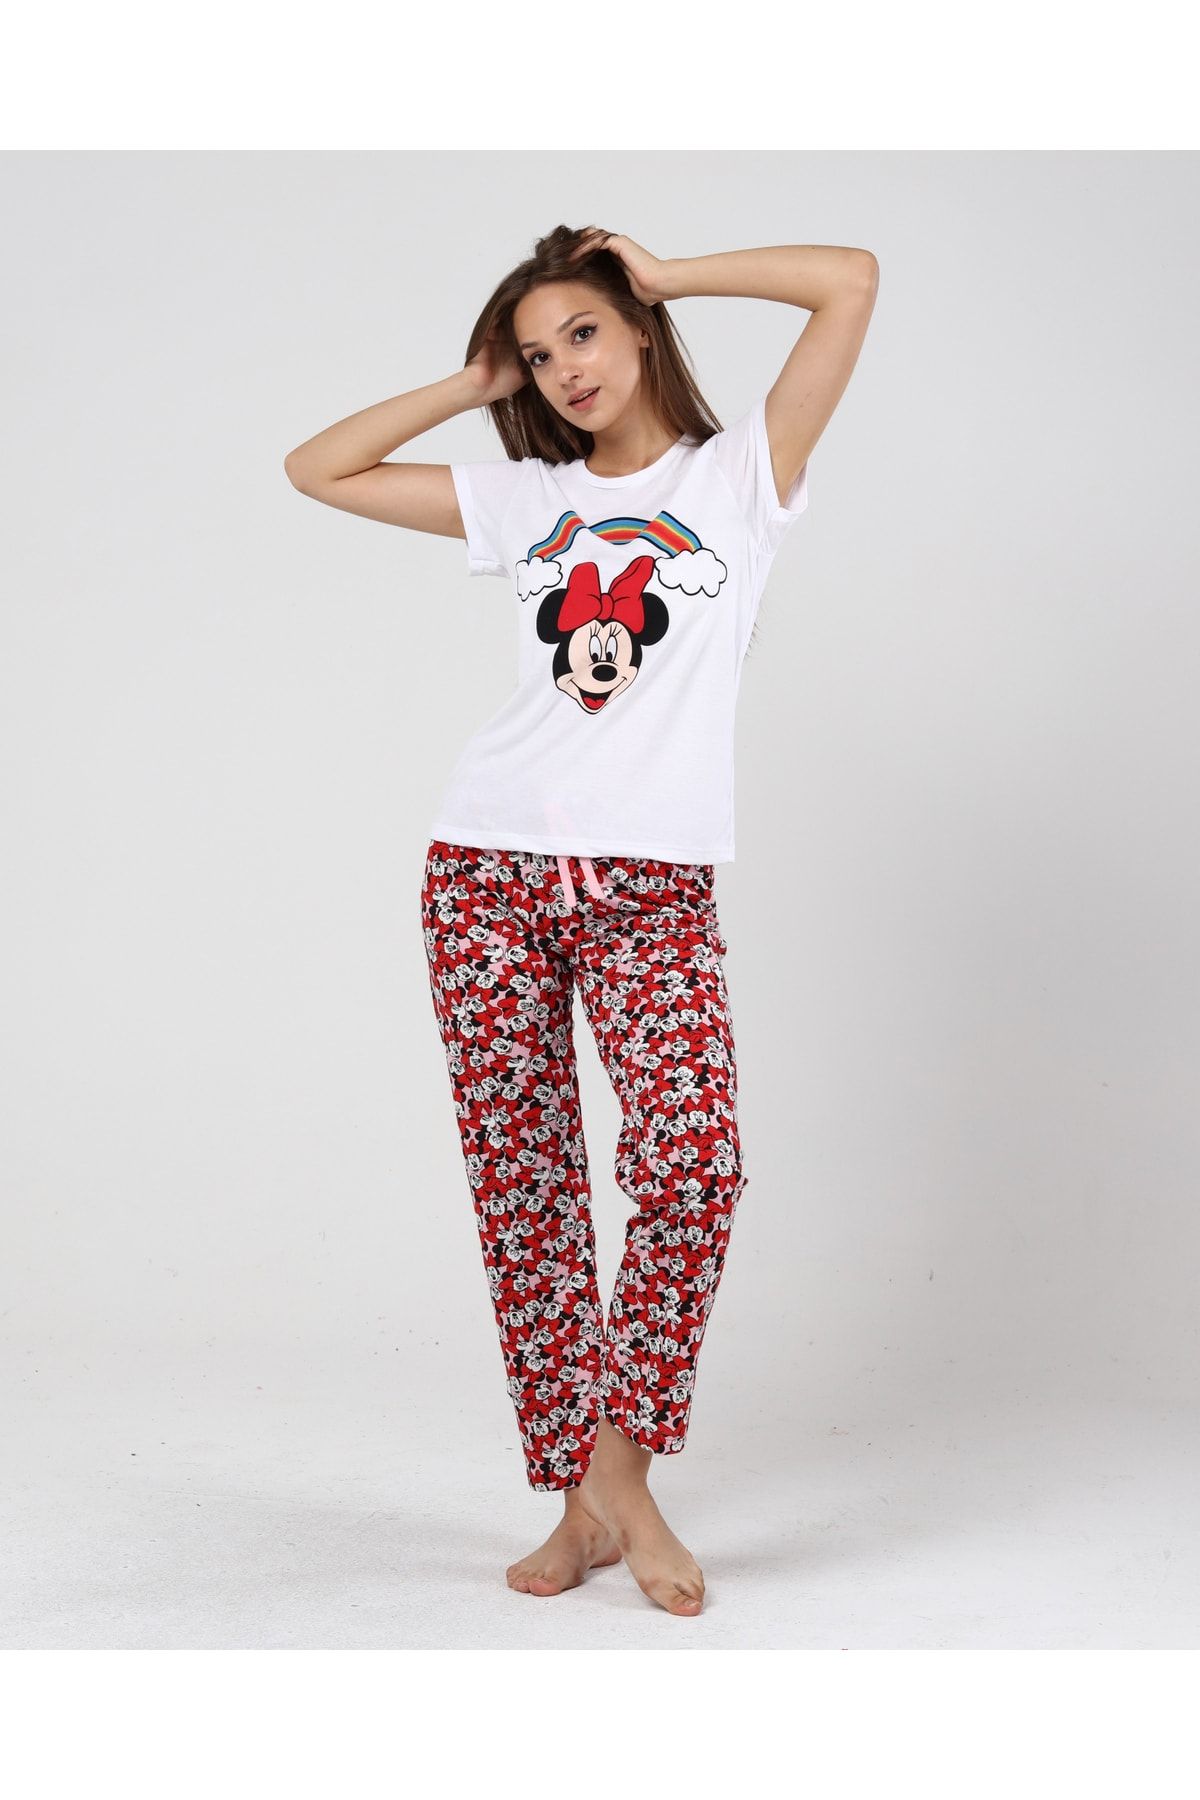 BAK’S STORE Kadın Kırmızı Gökküşağı Mickey Mouse Baskılı Kadın T-şort Pantolon Takımı